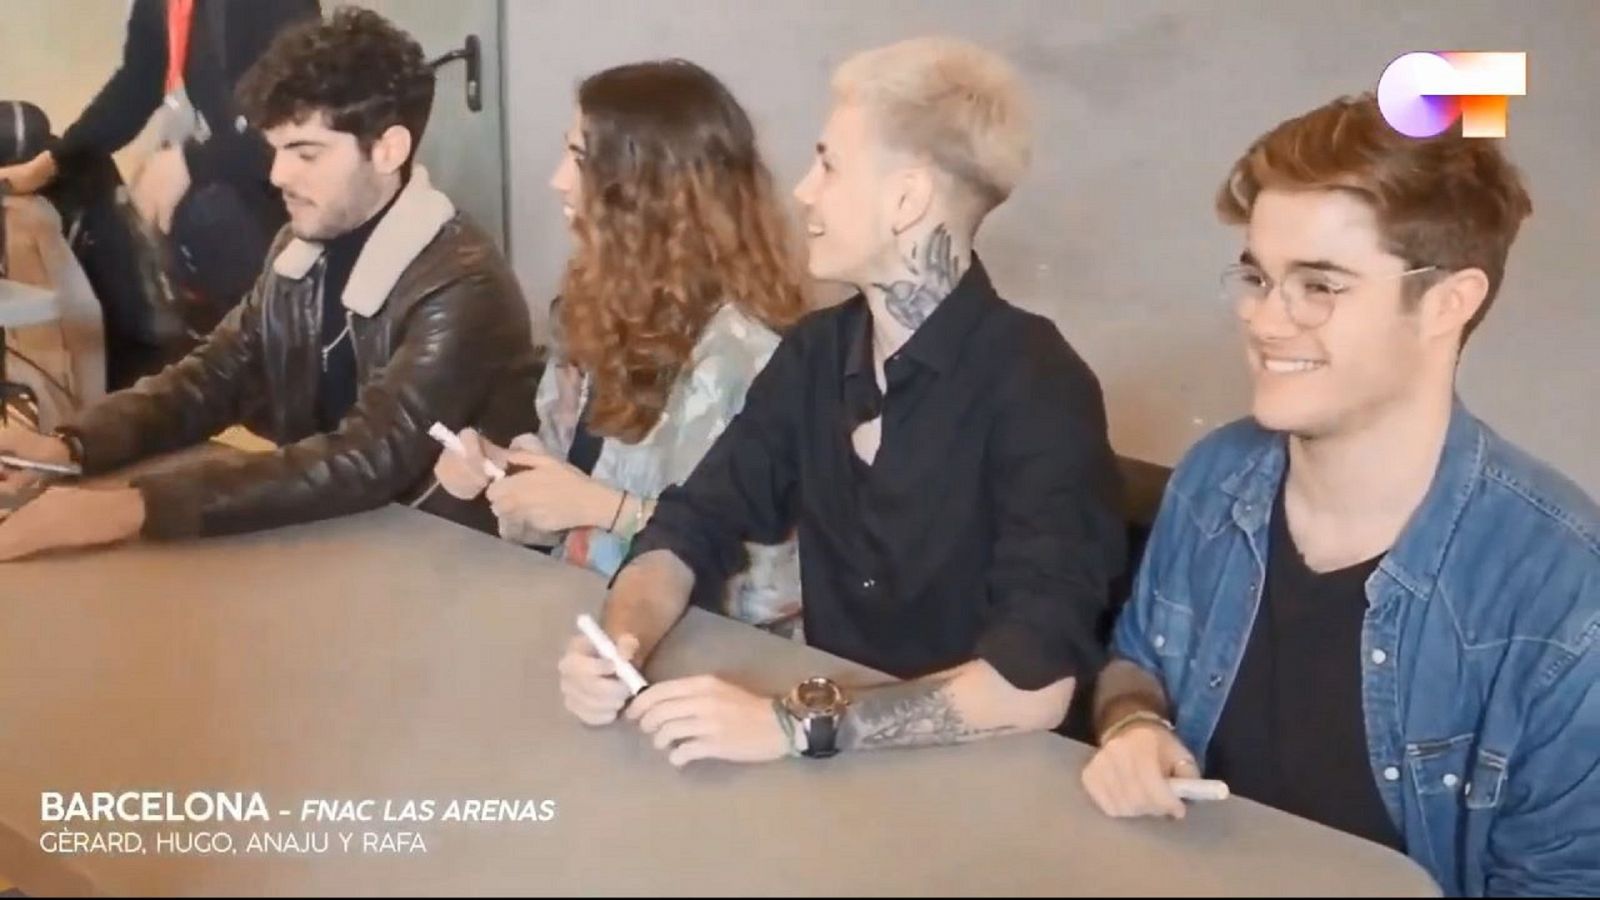 Primeros momentos de las firmas de Anajú, Gèrard, Hugo y Rafa en Barcelona